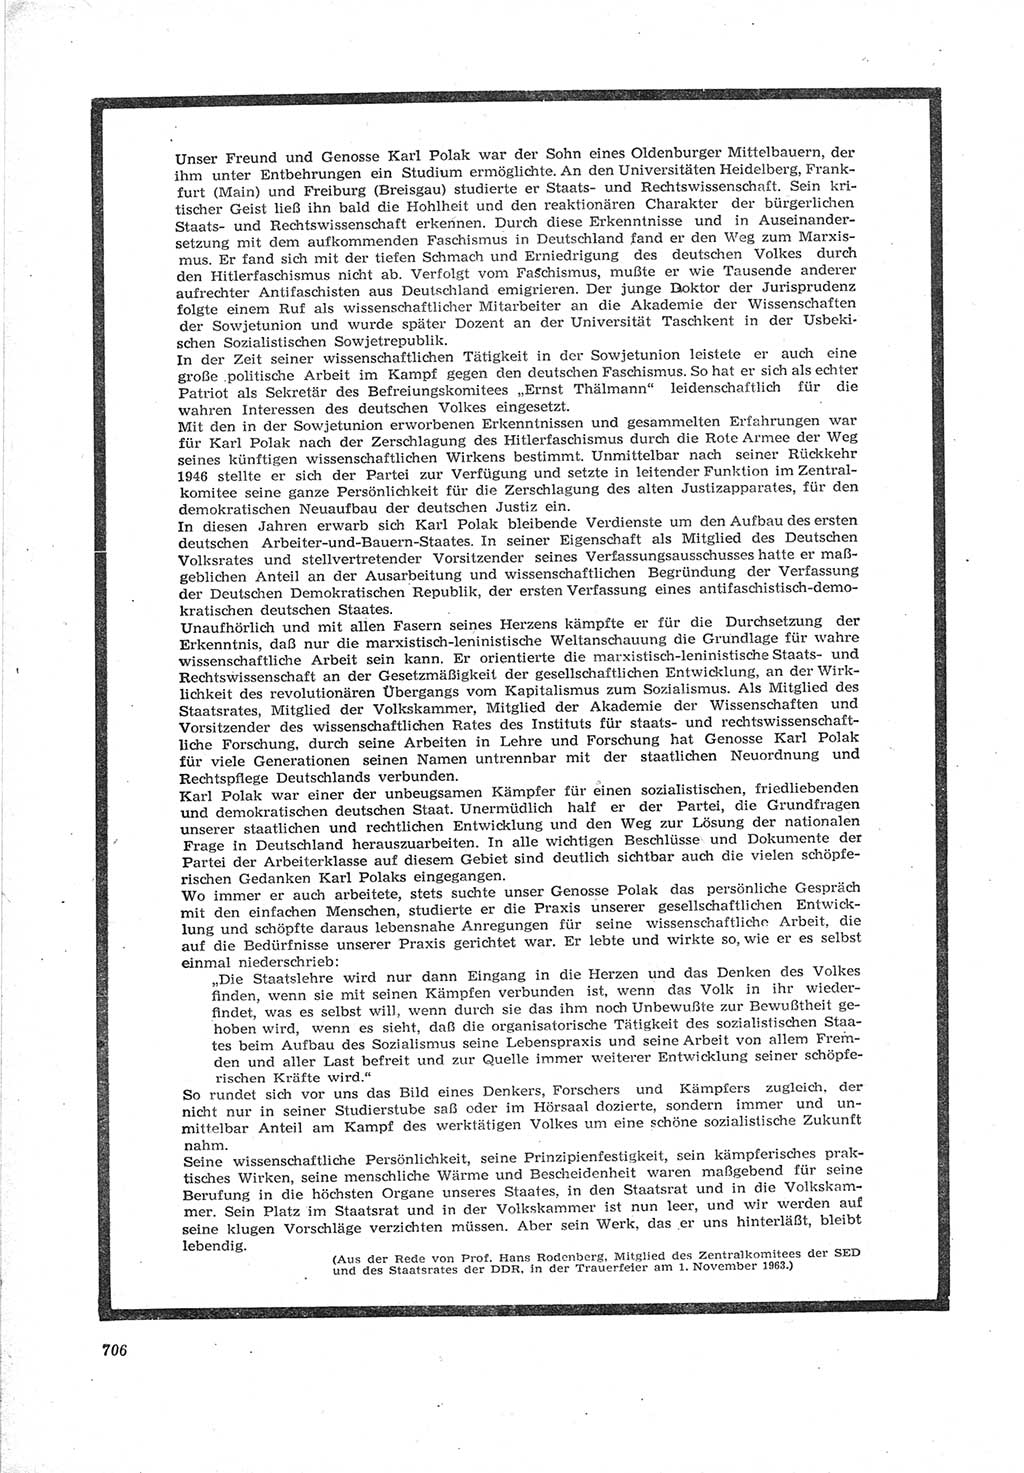 Neue Justiz (NJ), Zeitschrift für Recht und Rechtswissenschaft [Deutsche Demokratische Republik (DDR)], 17. Jahrgang 1963, Seite 706 (NJ DDR 1963, S. 706)